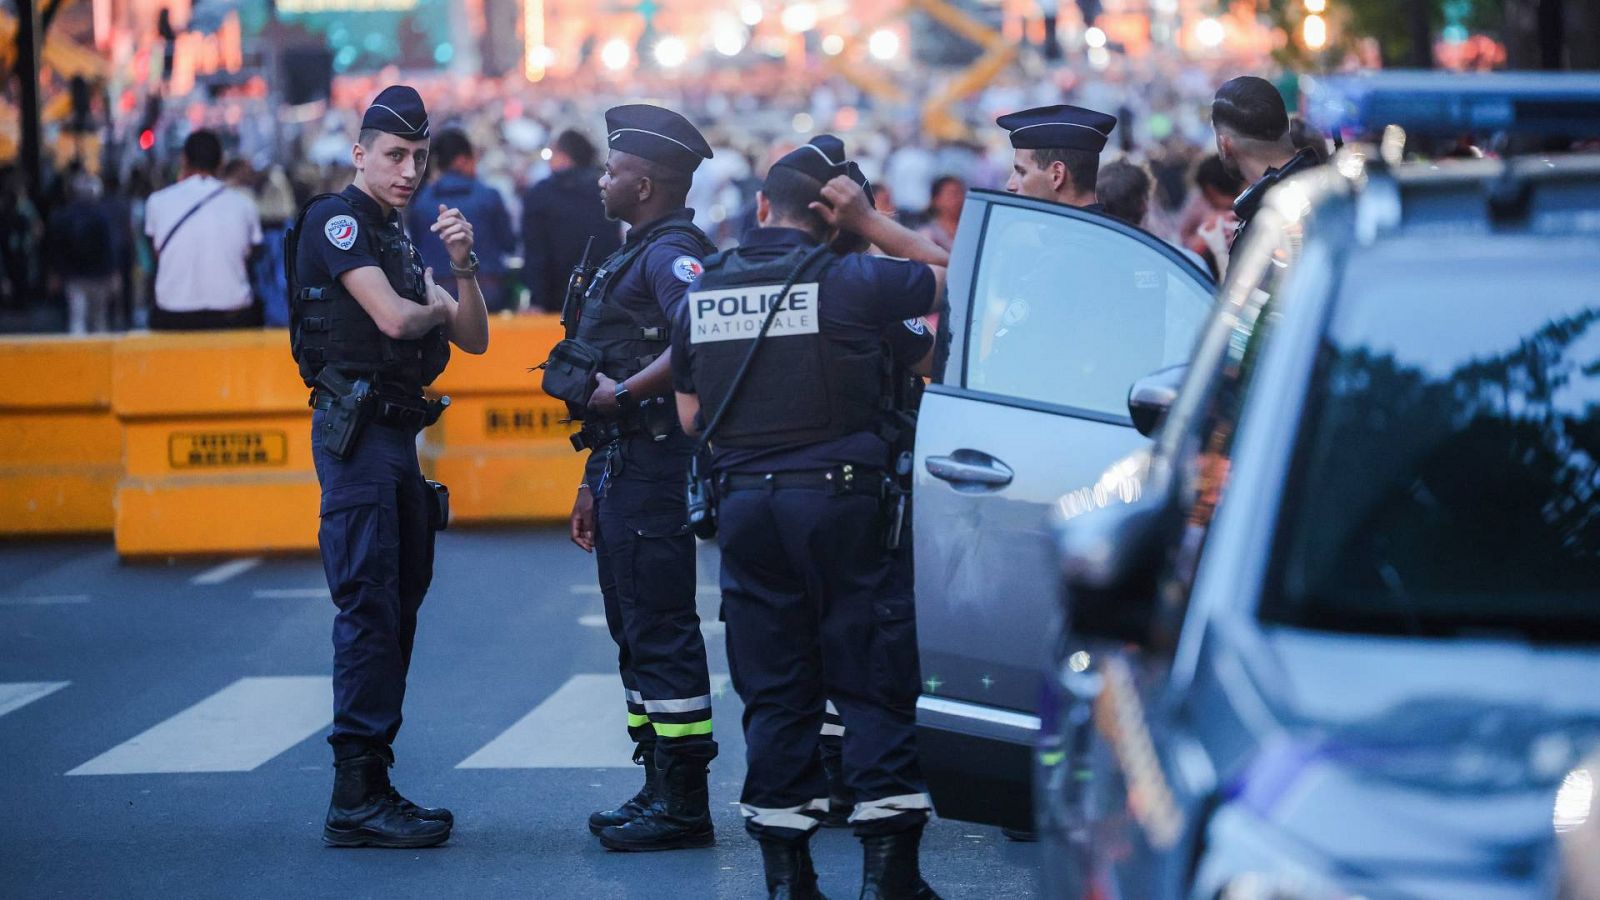 Séptima noche de disturbios en Francia con al menos 72 detenidos